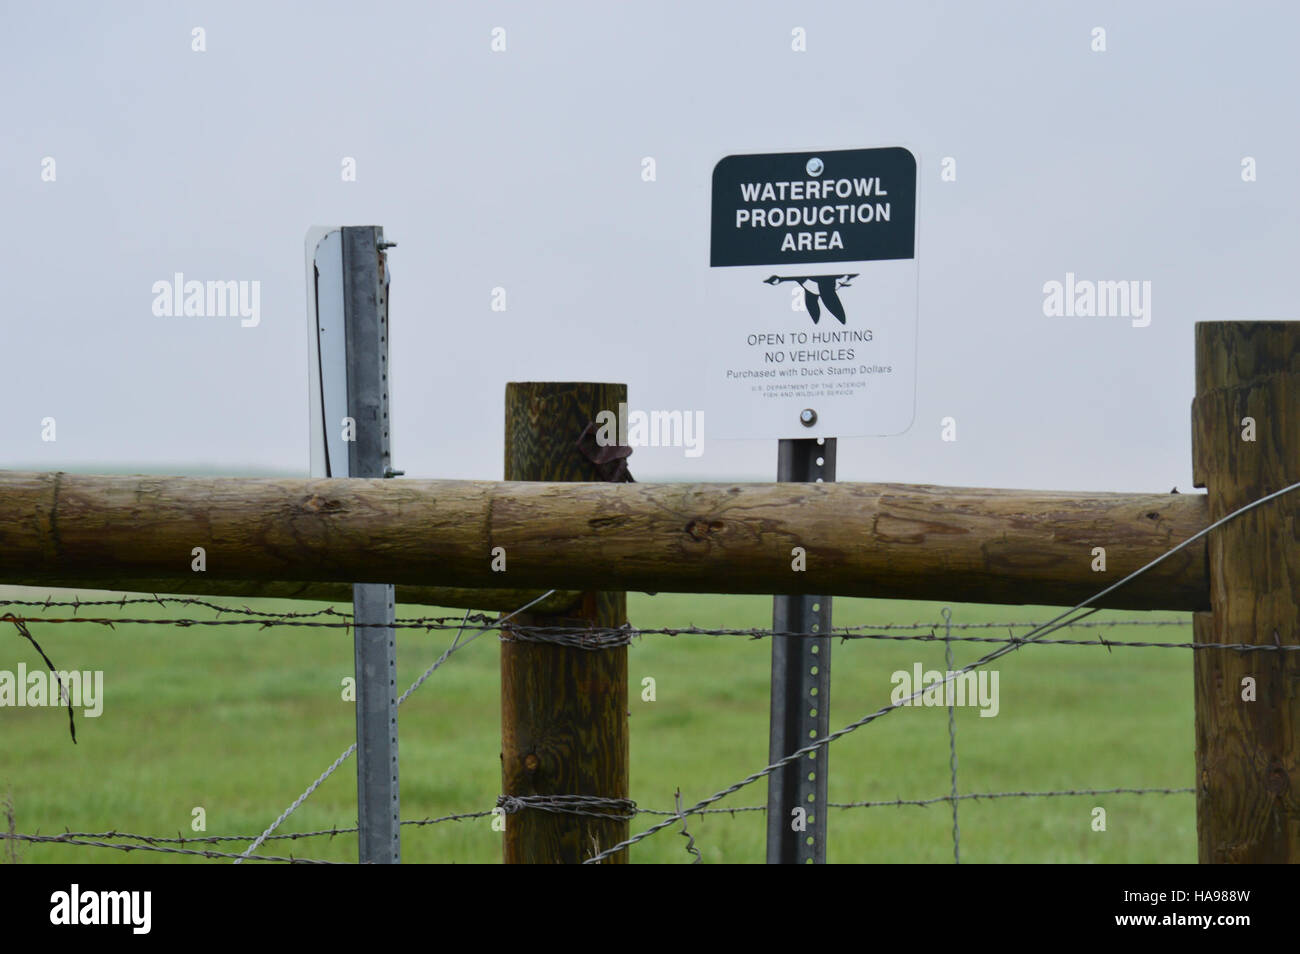 Usfwsmtnprairie 9161567694 Nahaufnahme von Wasservögeln Produktionsfläche Zeichen Stockfoto